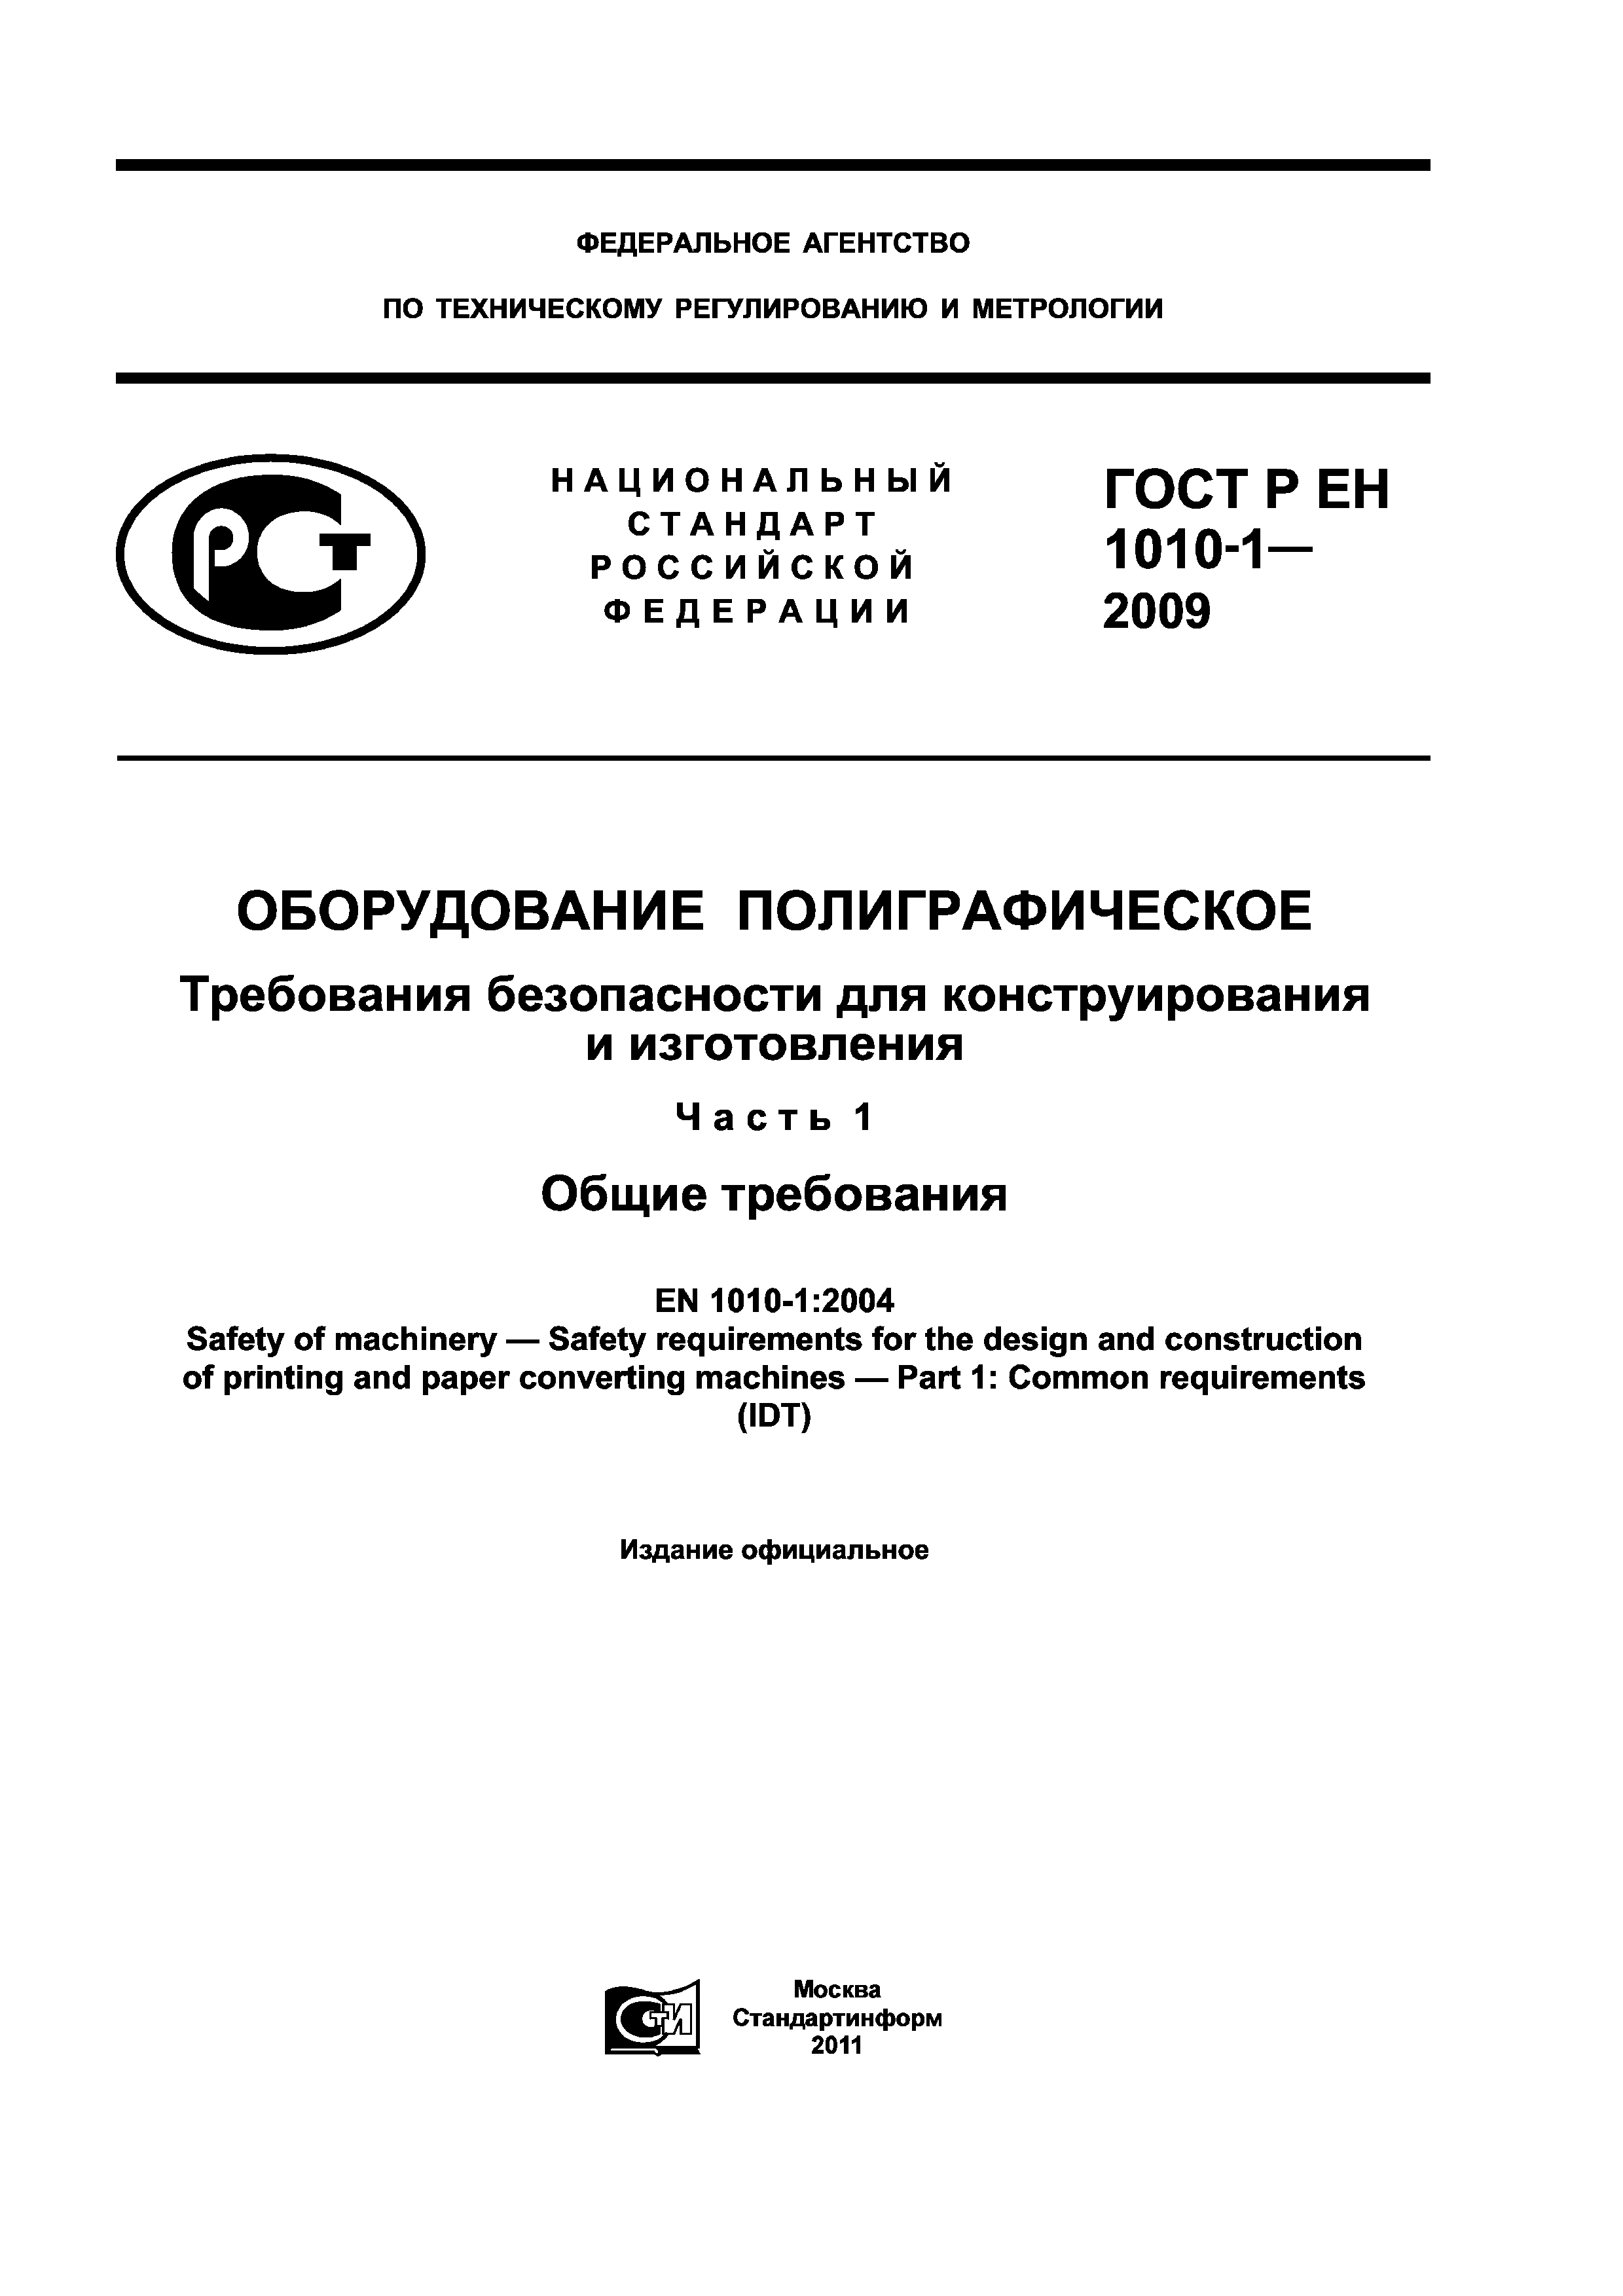 ГОСТ Р ЕН 1010-1-2009